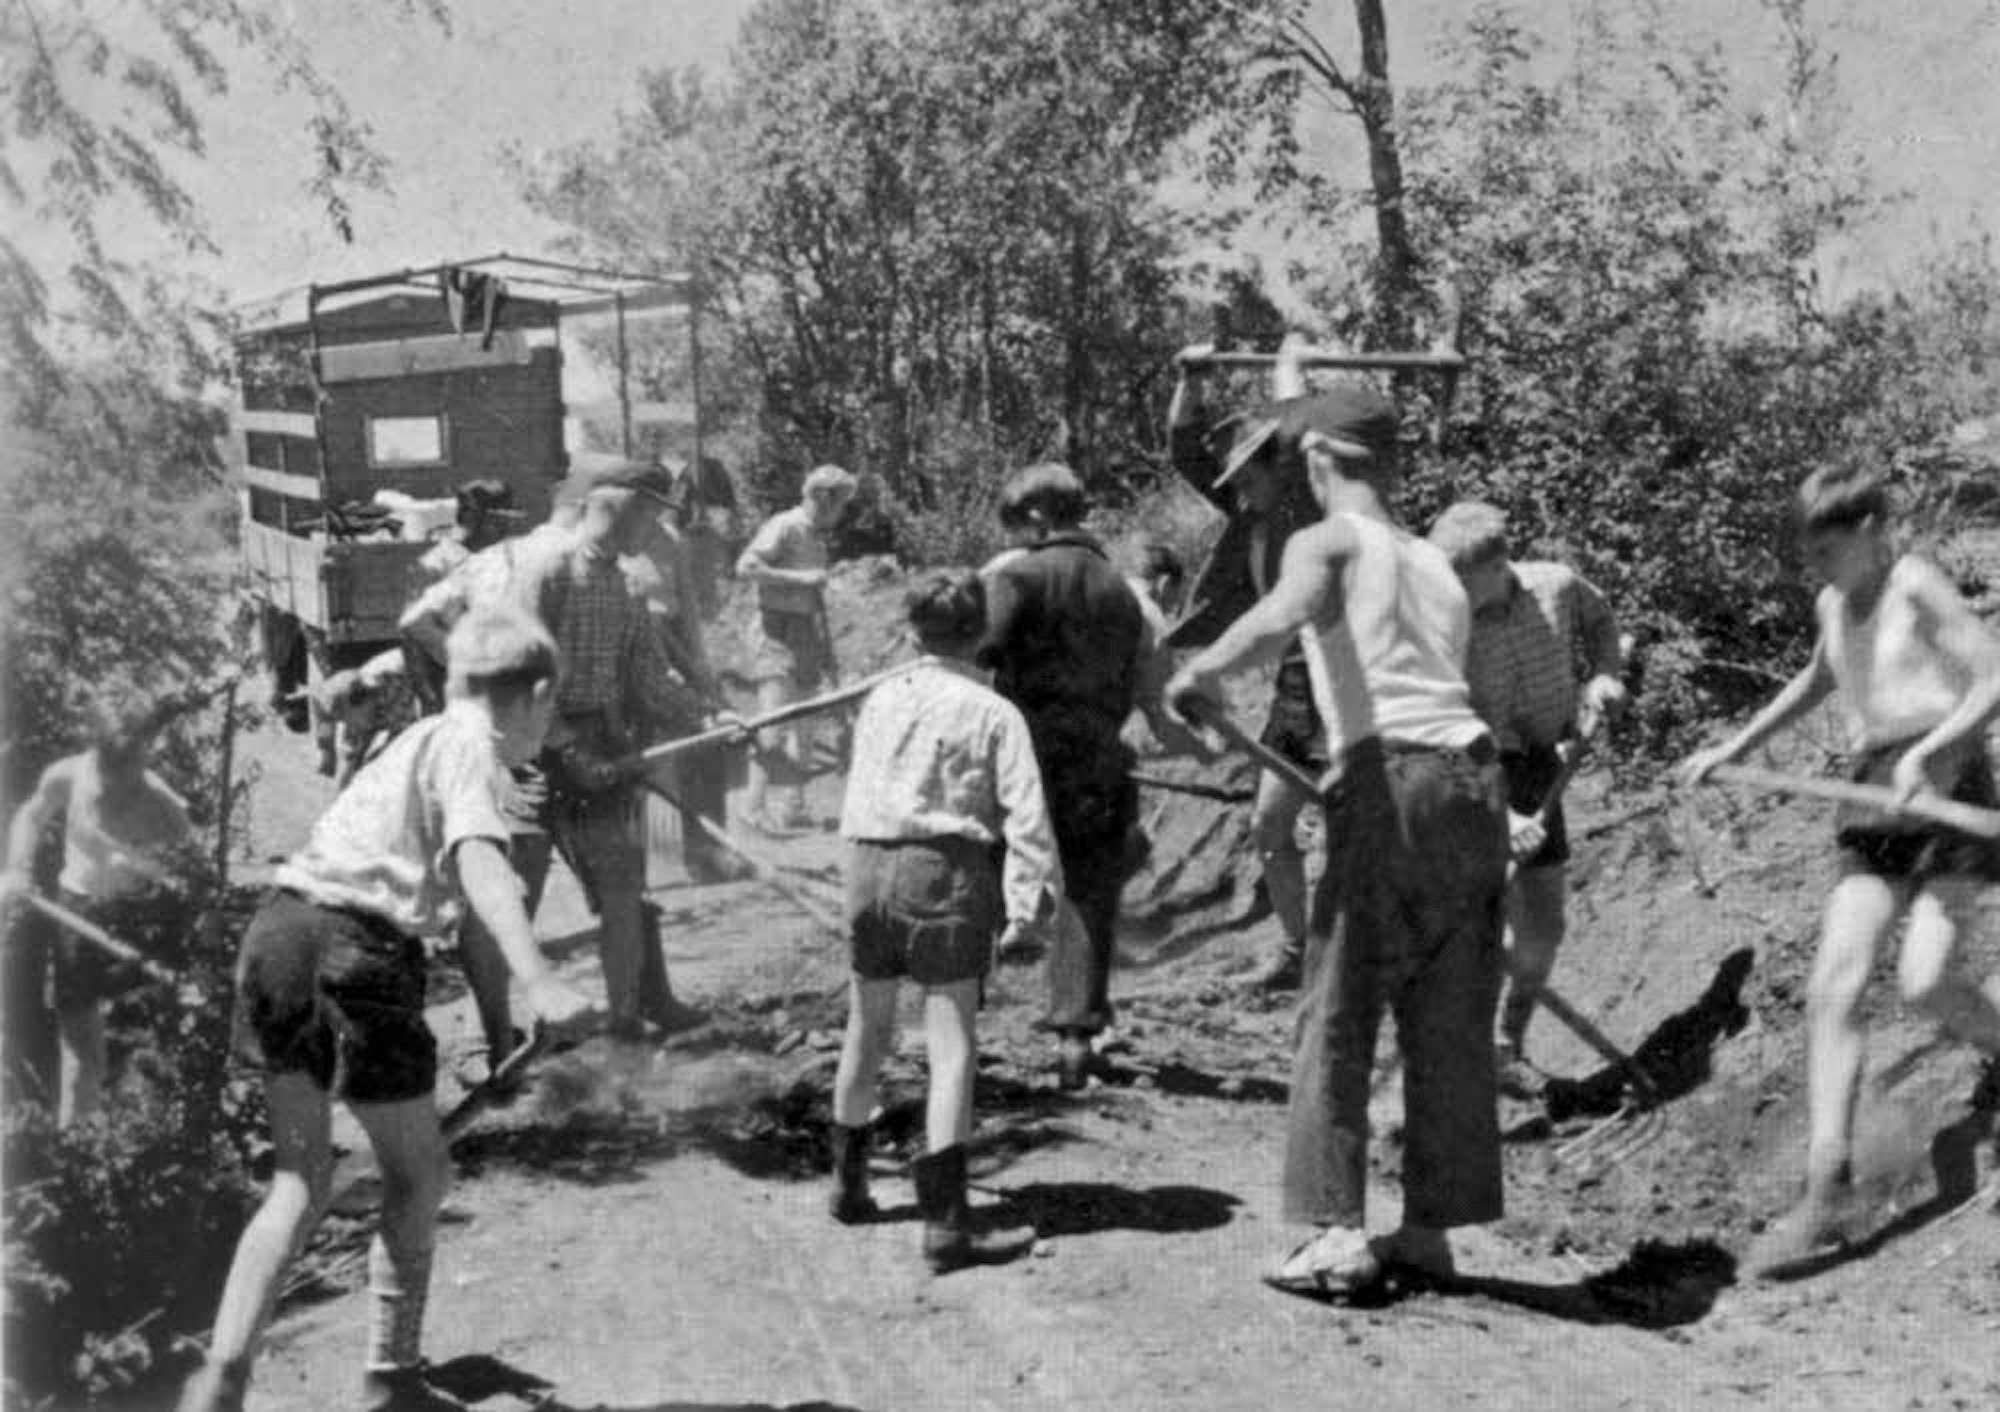 Die Kinder in der Colonia Dignidad wurden zur Arbeit gezwungen.